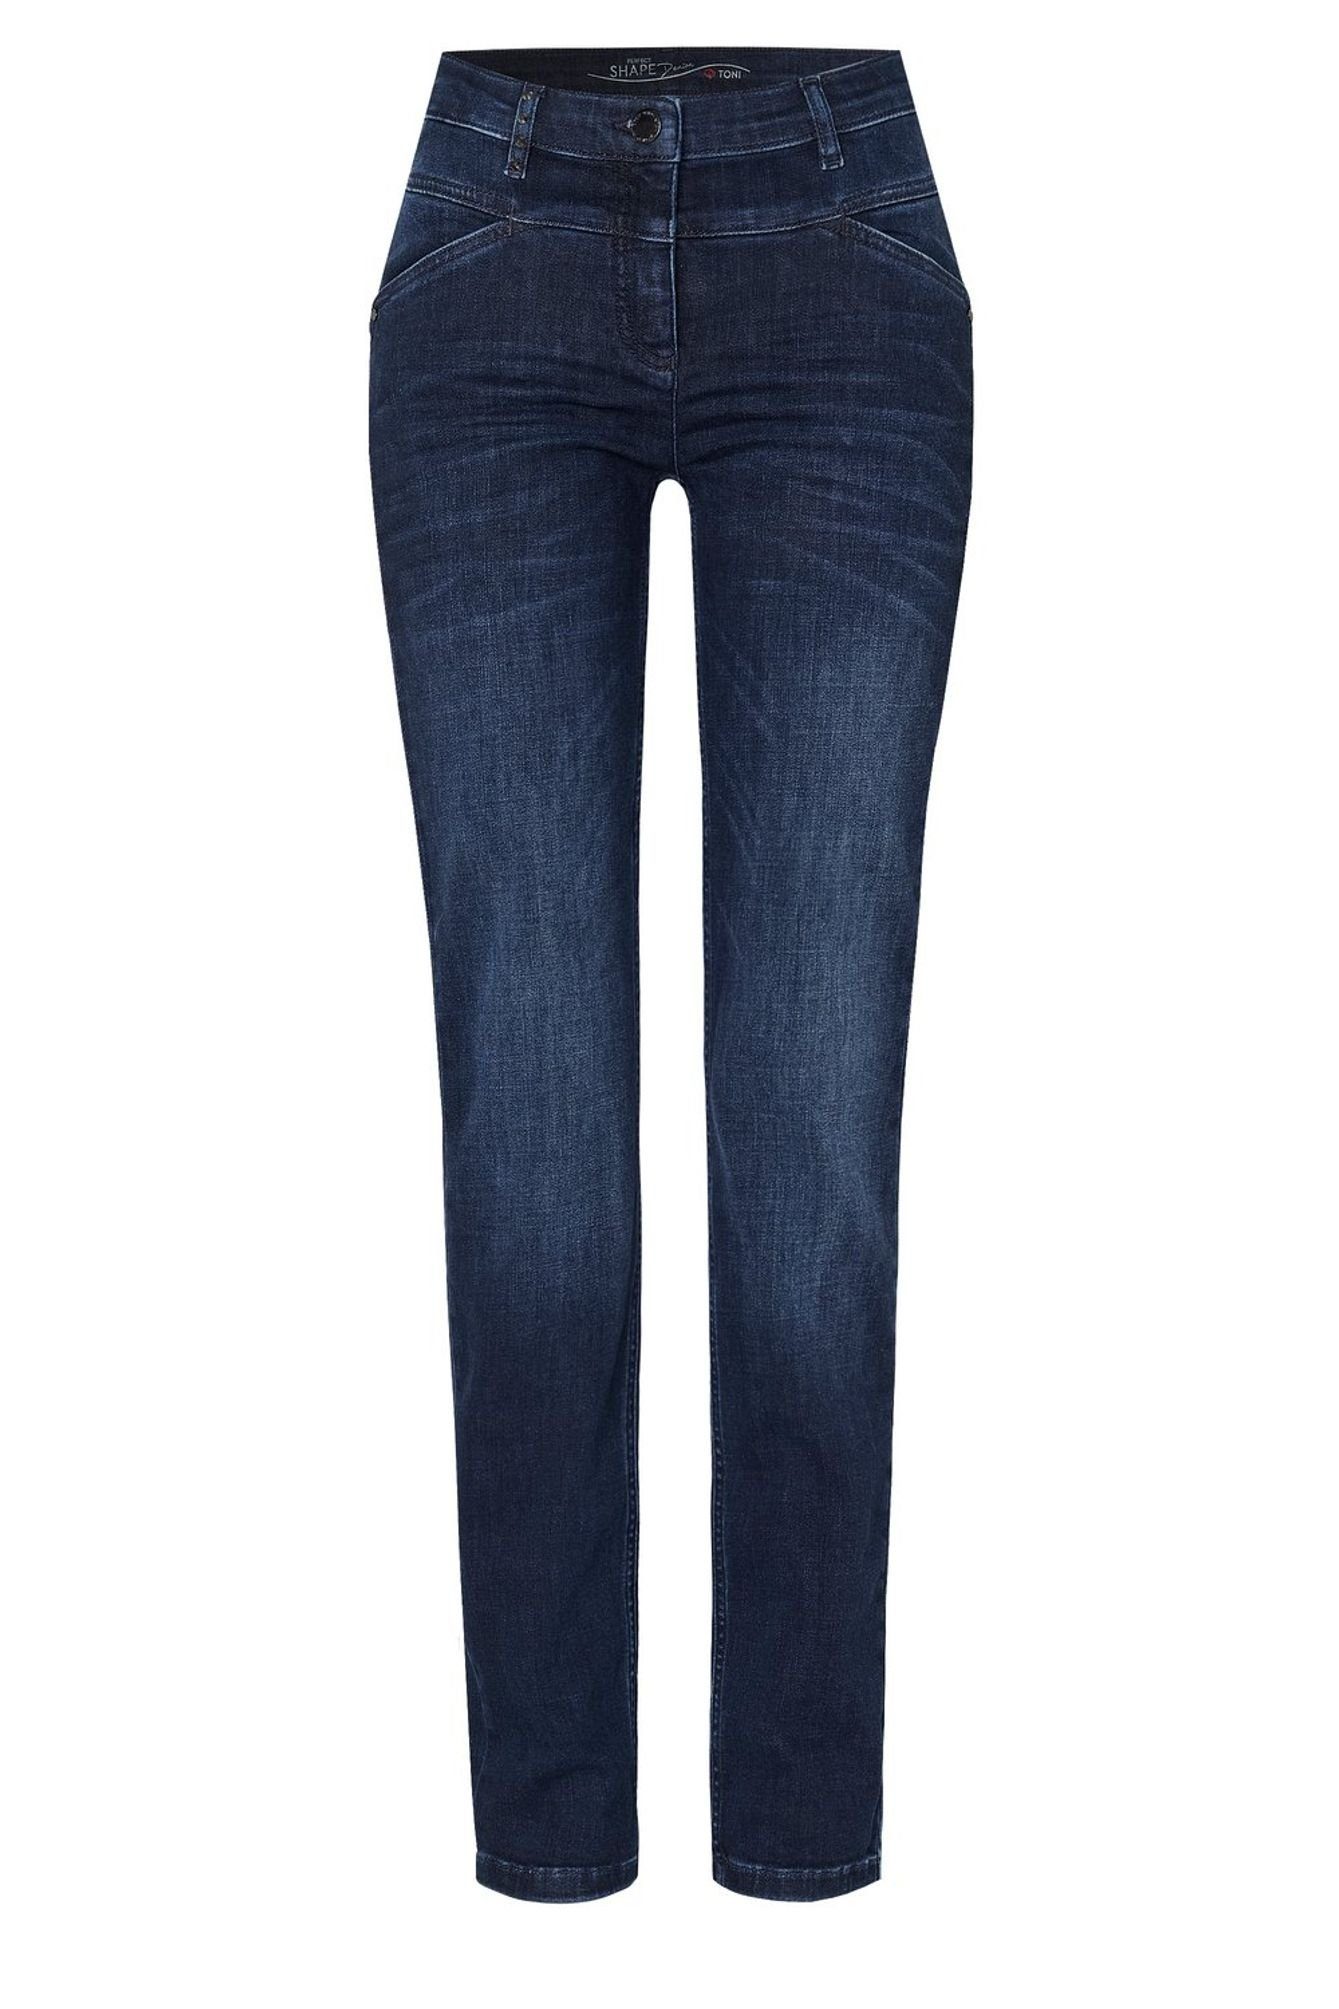 5-Pocket-Design 5-Pocket-Jeans TONI used 1106-17 (574) 11-01 blue